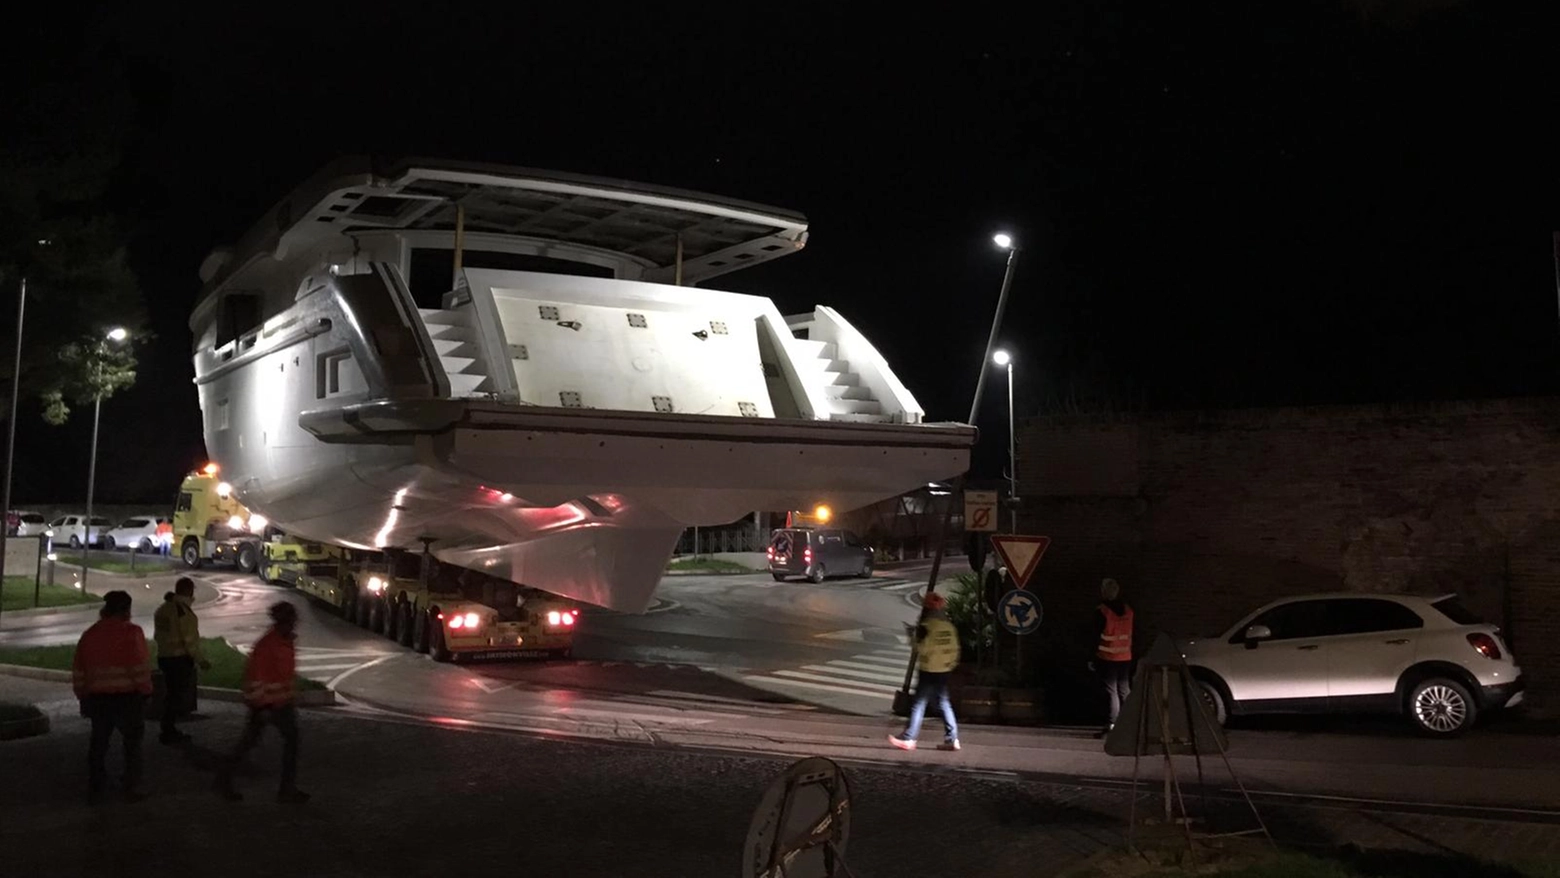 Il nuovo mega yacht della Benetti che ha attraversato Fano nella notte (Foto e video Luca Toni)